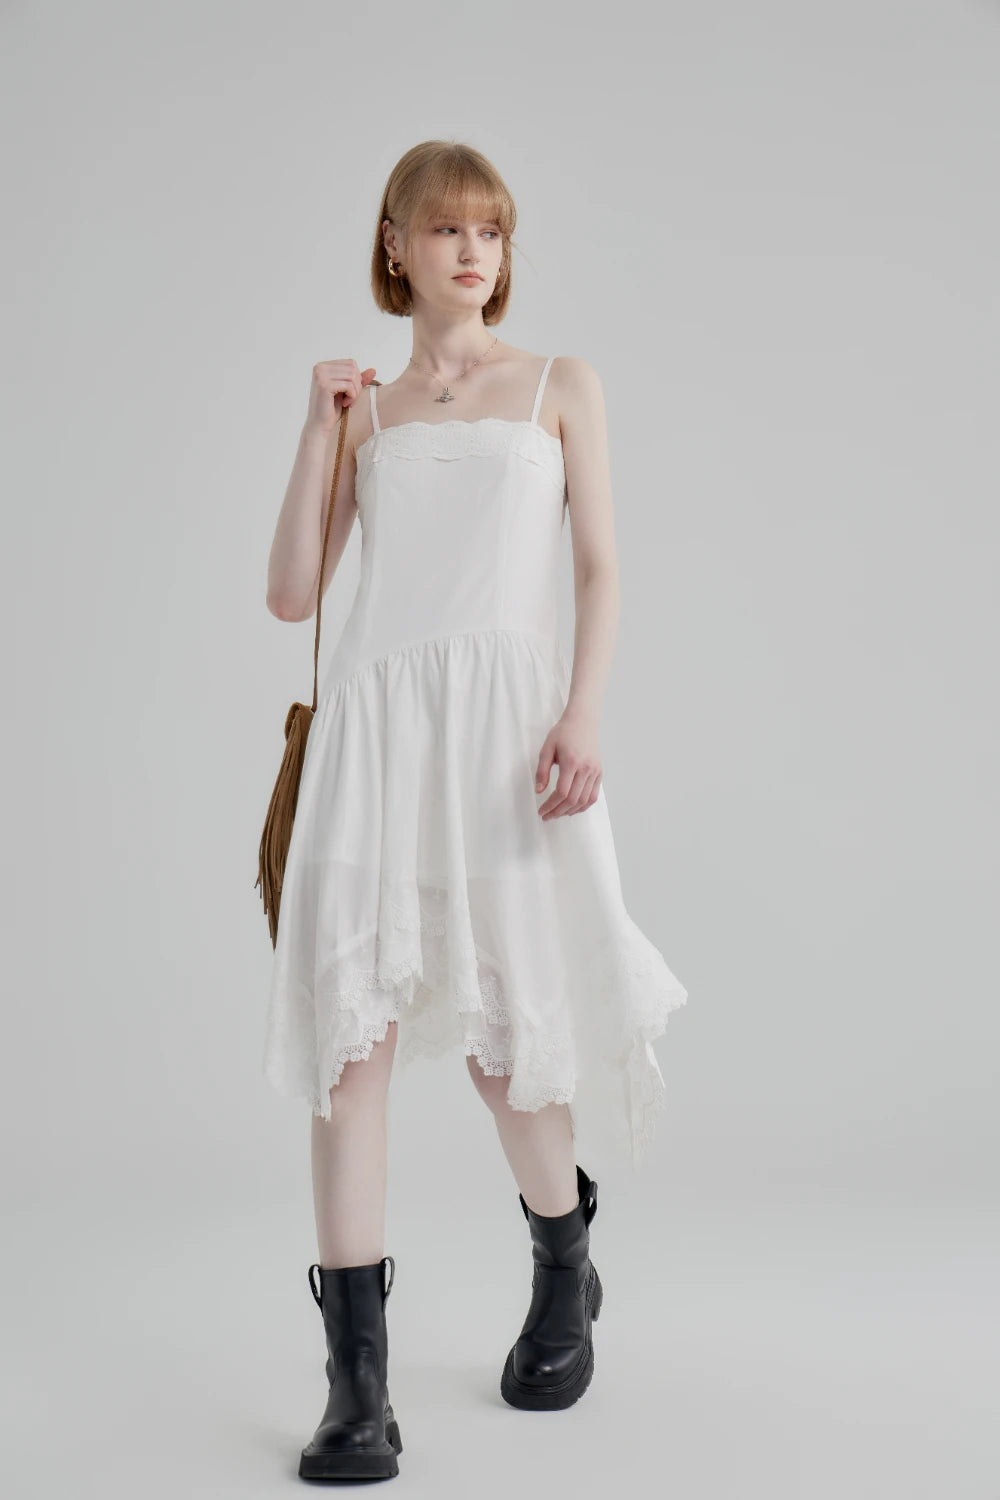 Romantic Lace-Trimmed White Spaghetti Strap Dress